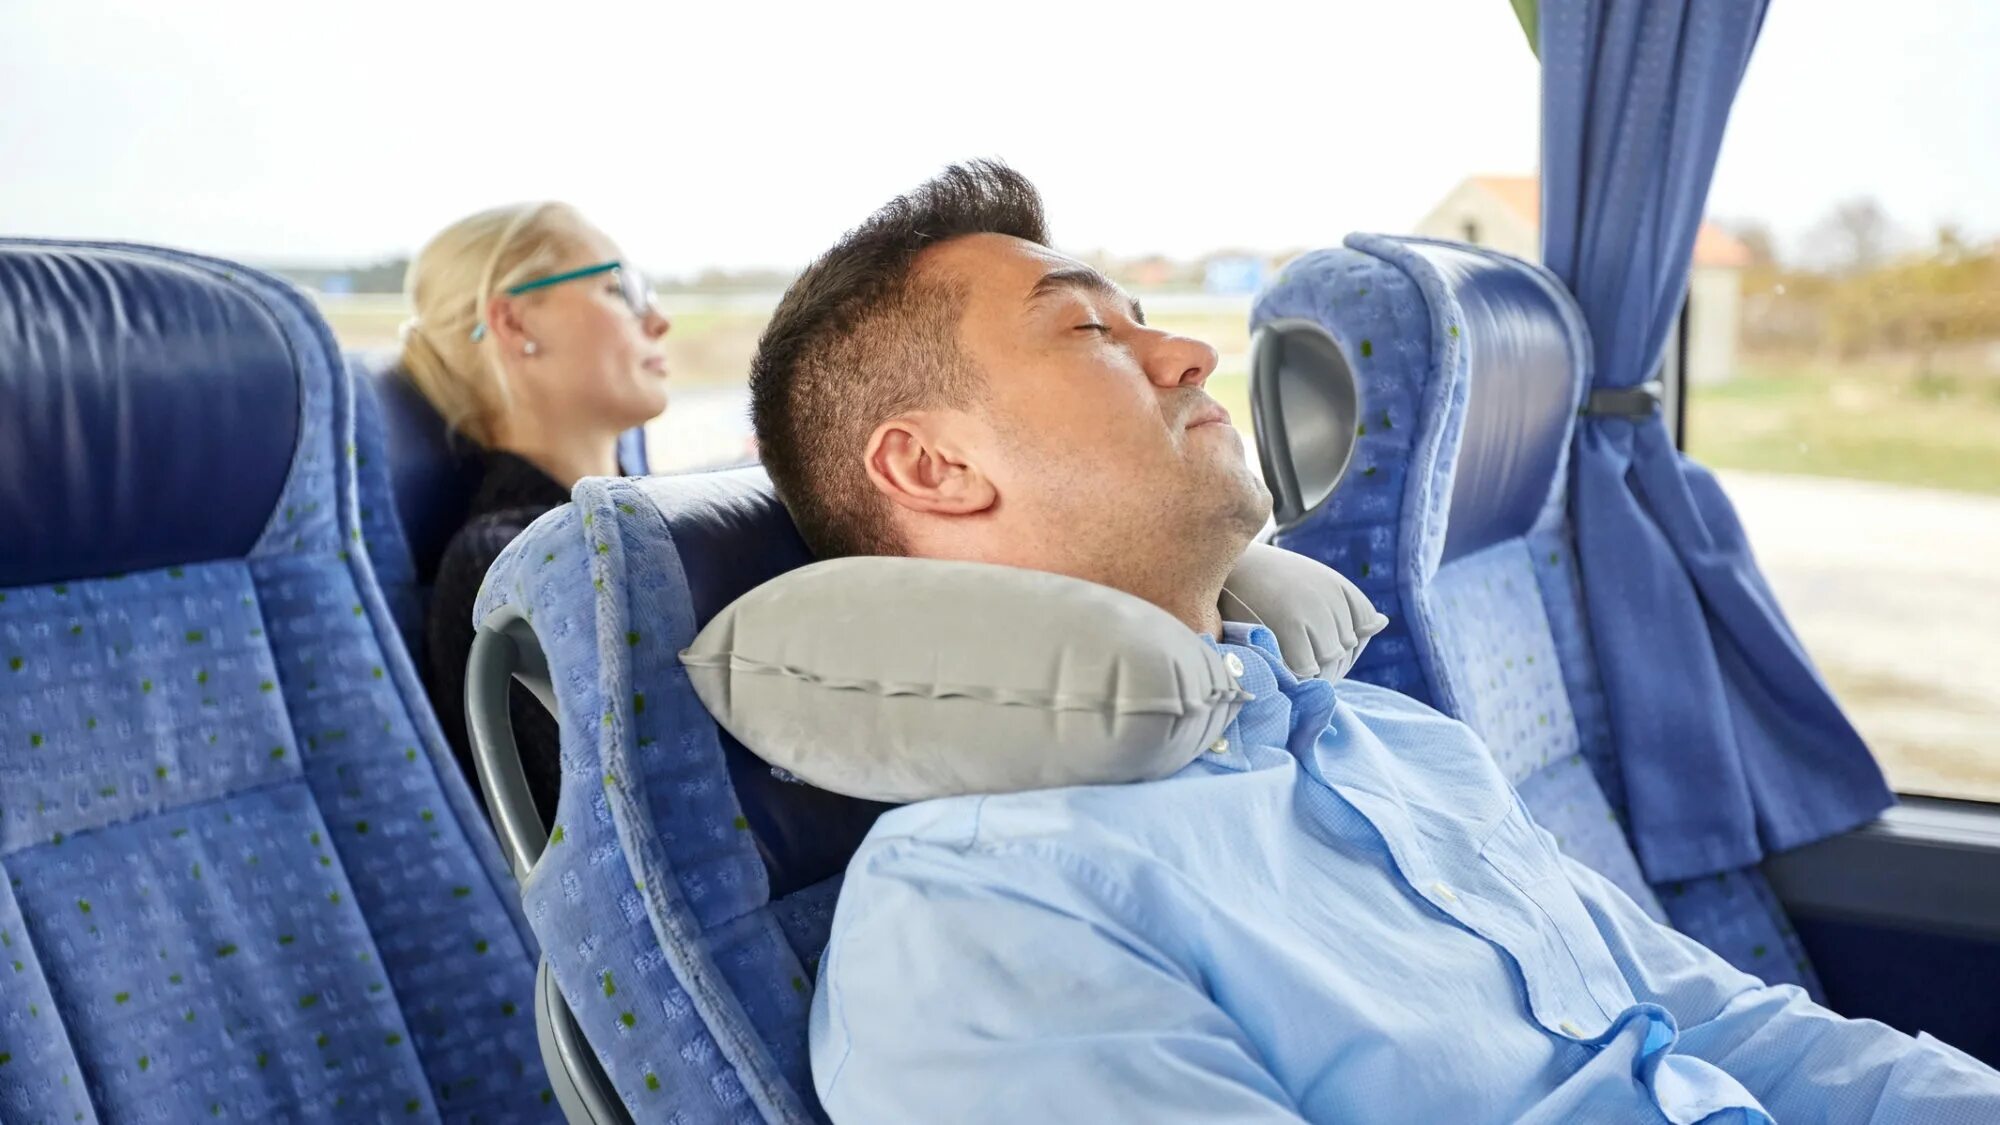 Время длительной поездки. Подушка для путешествий в автобусе. Подушка для сна в транспорте. Подушка для сна в автобусе. Путешествия с комфортом.